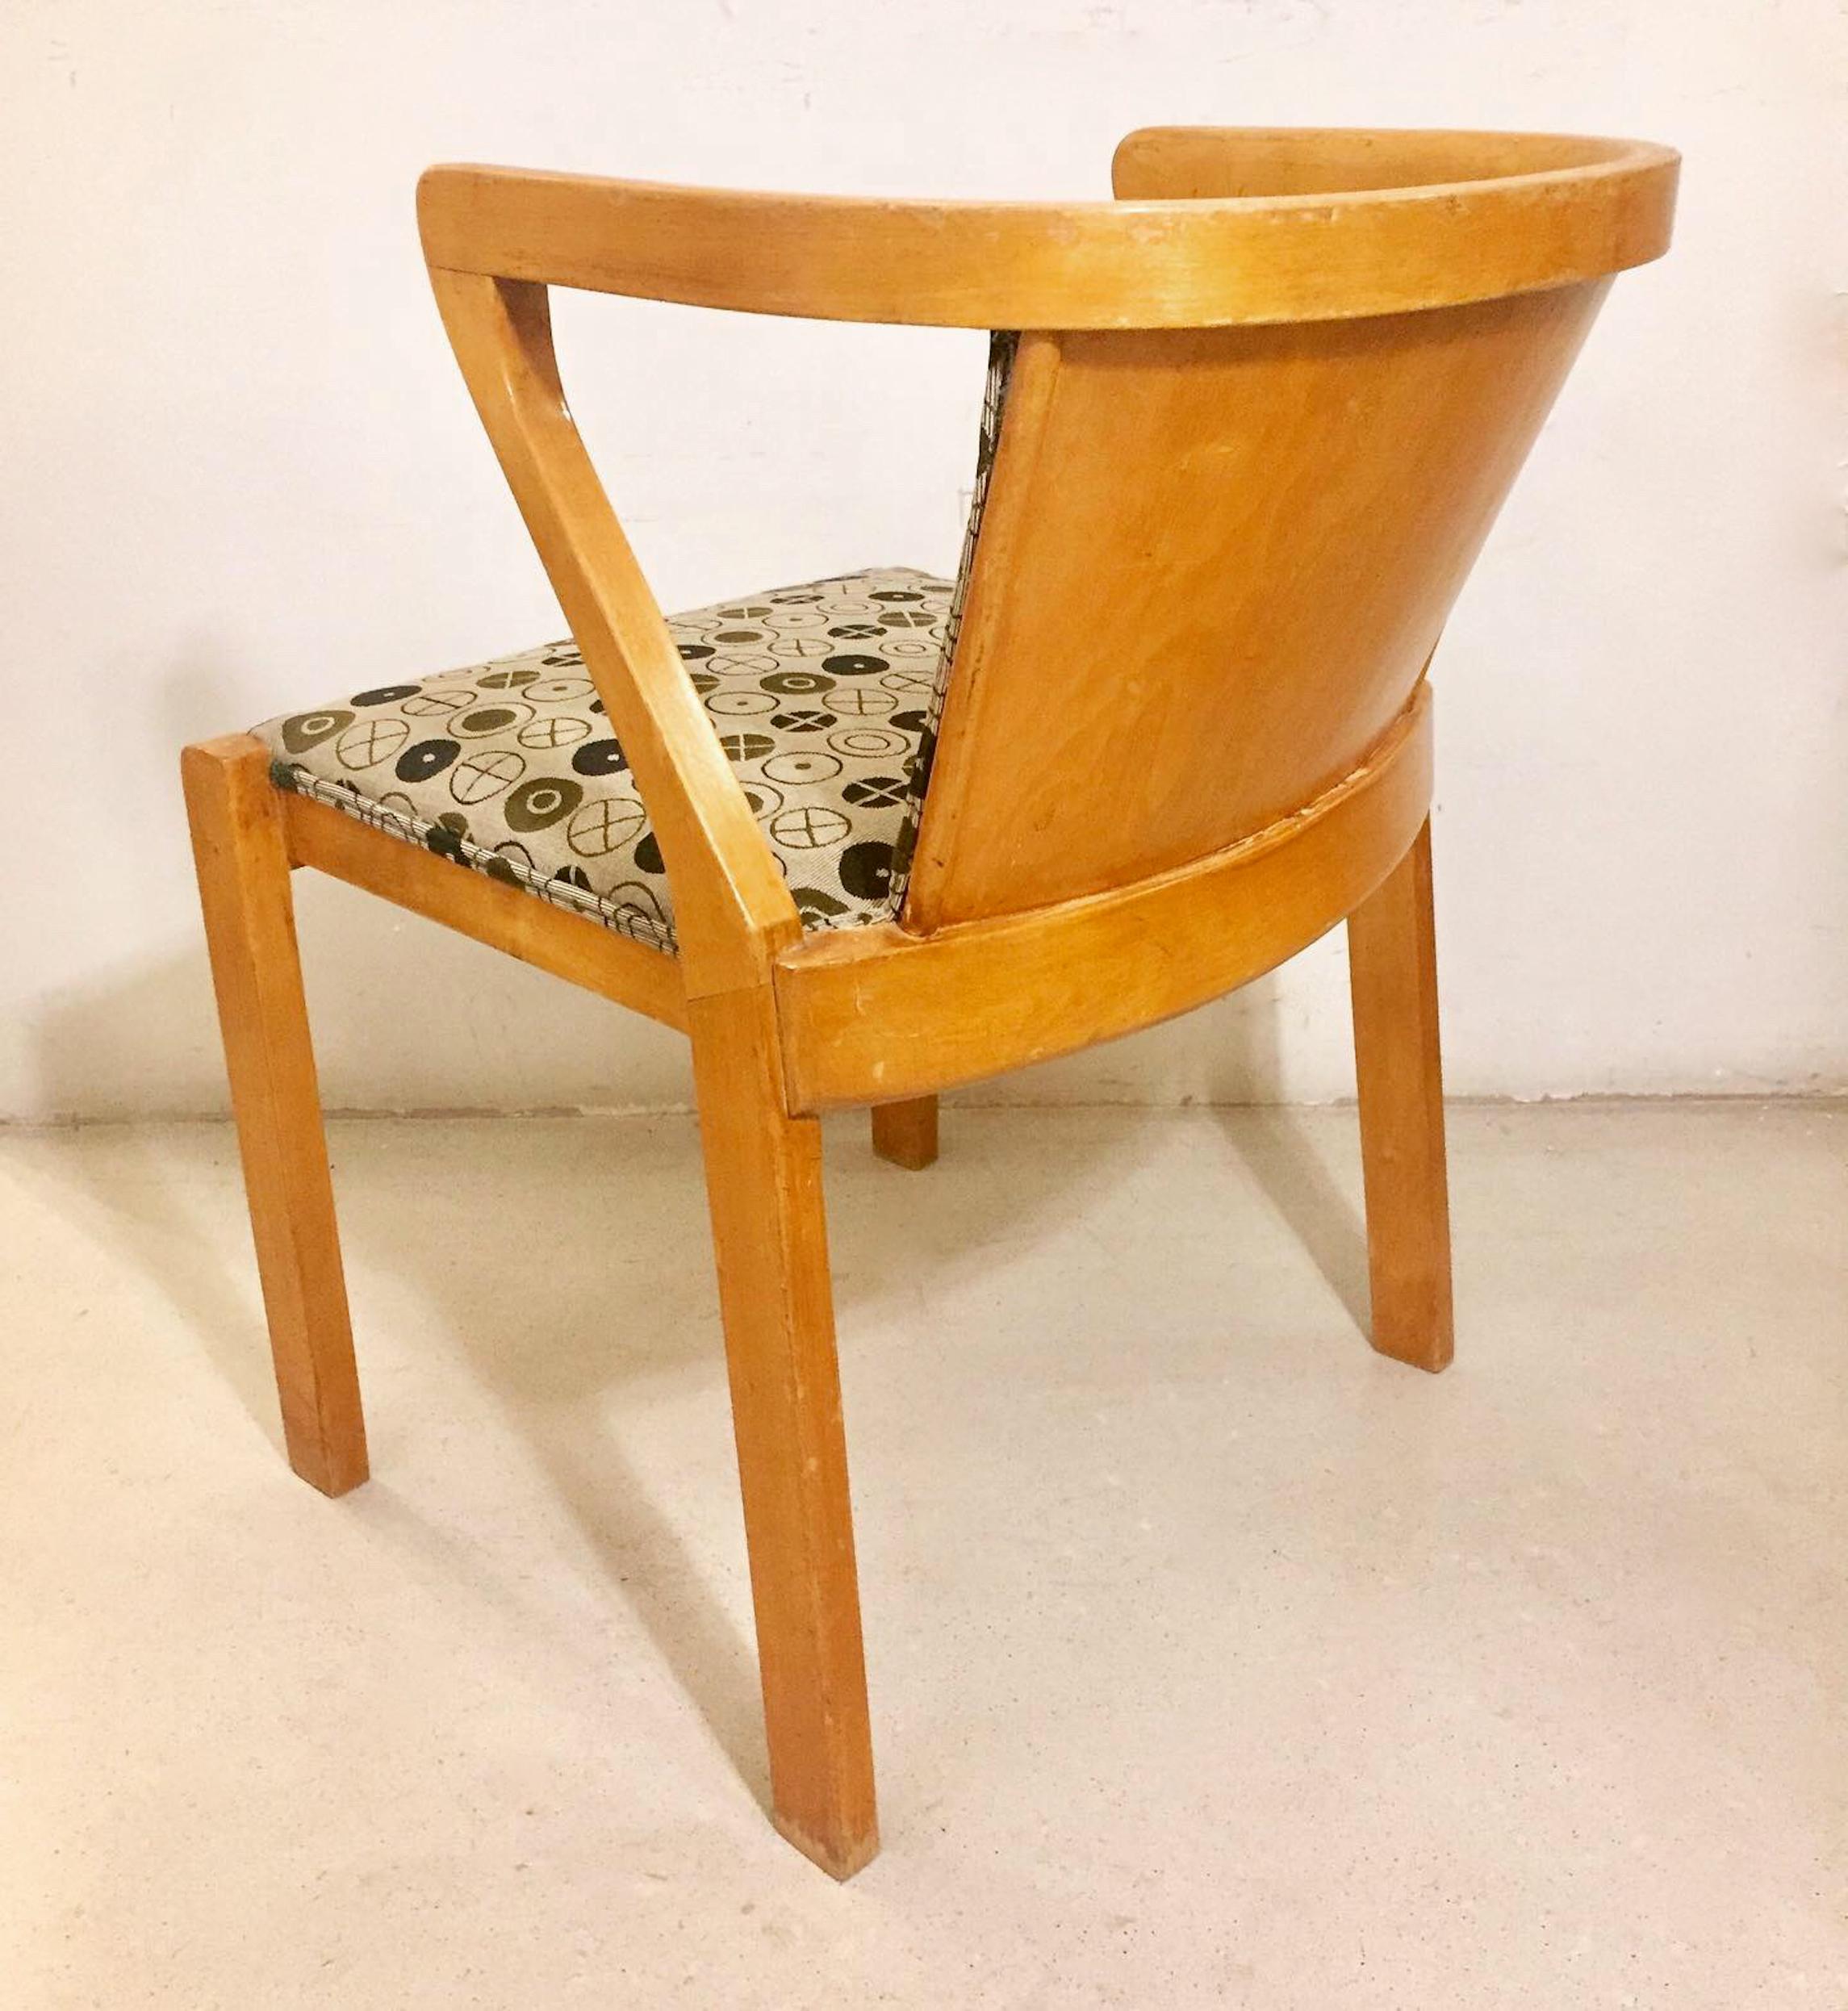 Une chaise Borchardt d'Alvar Aalto, modèle 15, conçue par Alvar Aalto et éditée en 1930. Estampillé. Rembourrés dans des tissus de style Eames. Excellent état.